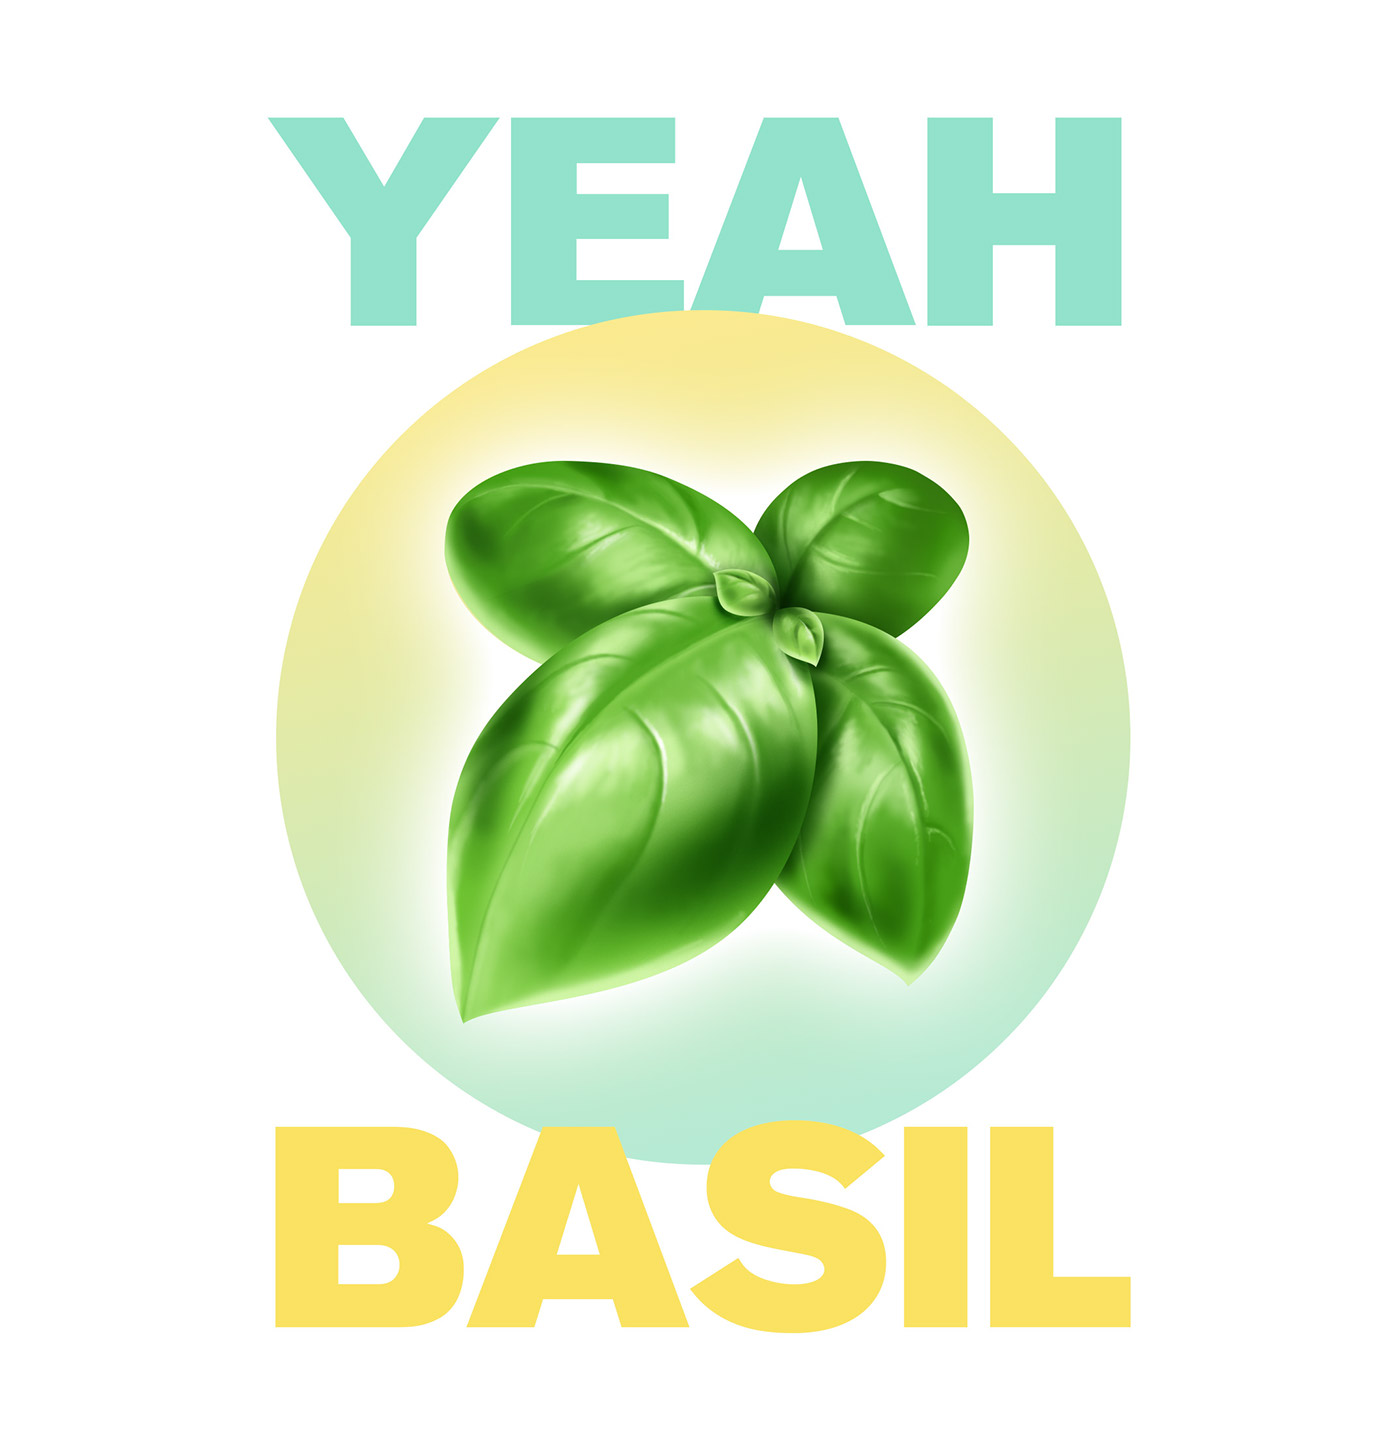 digital painting Basil poster